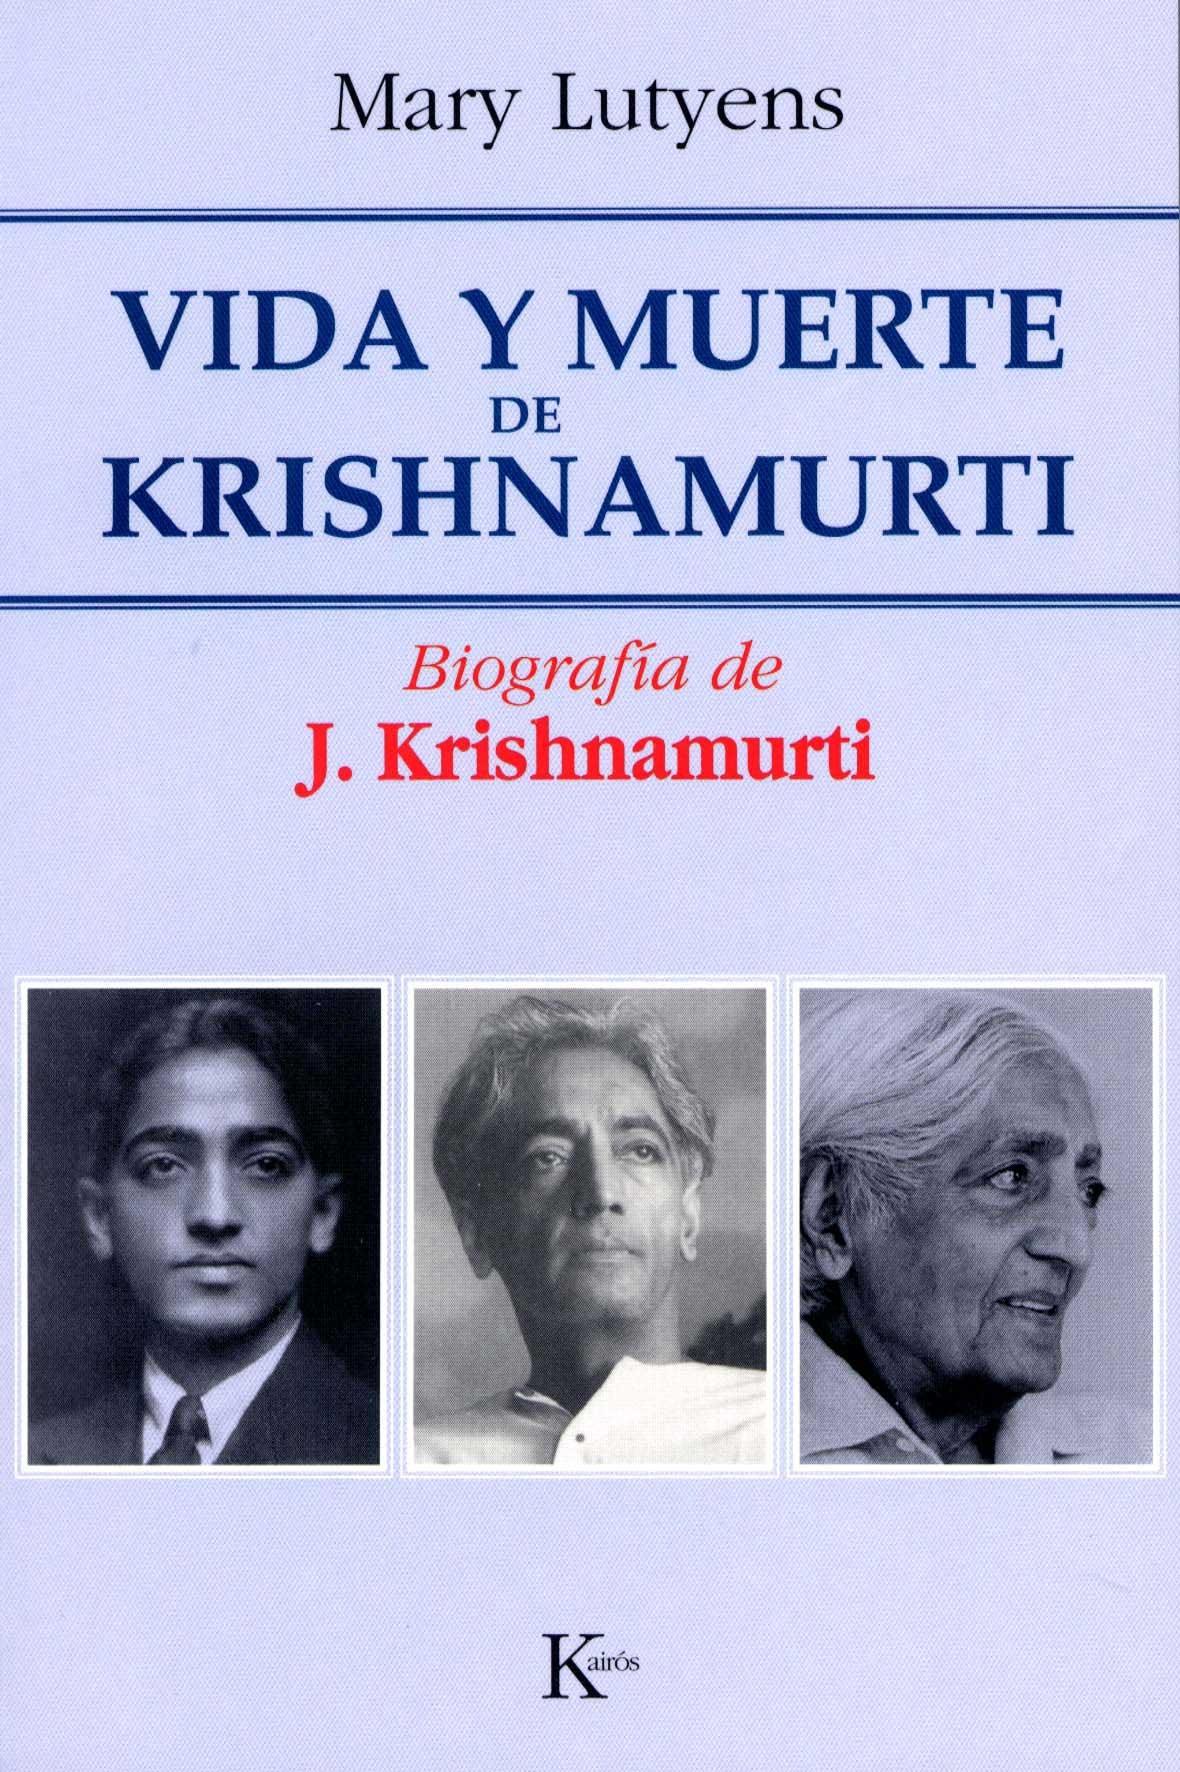 Vida y muerte de Krishnamurti (1895-1986) "biografía de J. Krishnamurti"